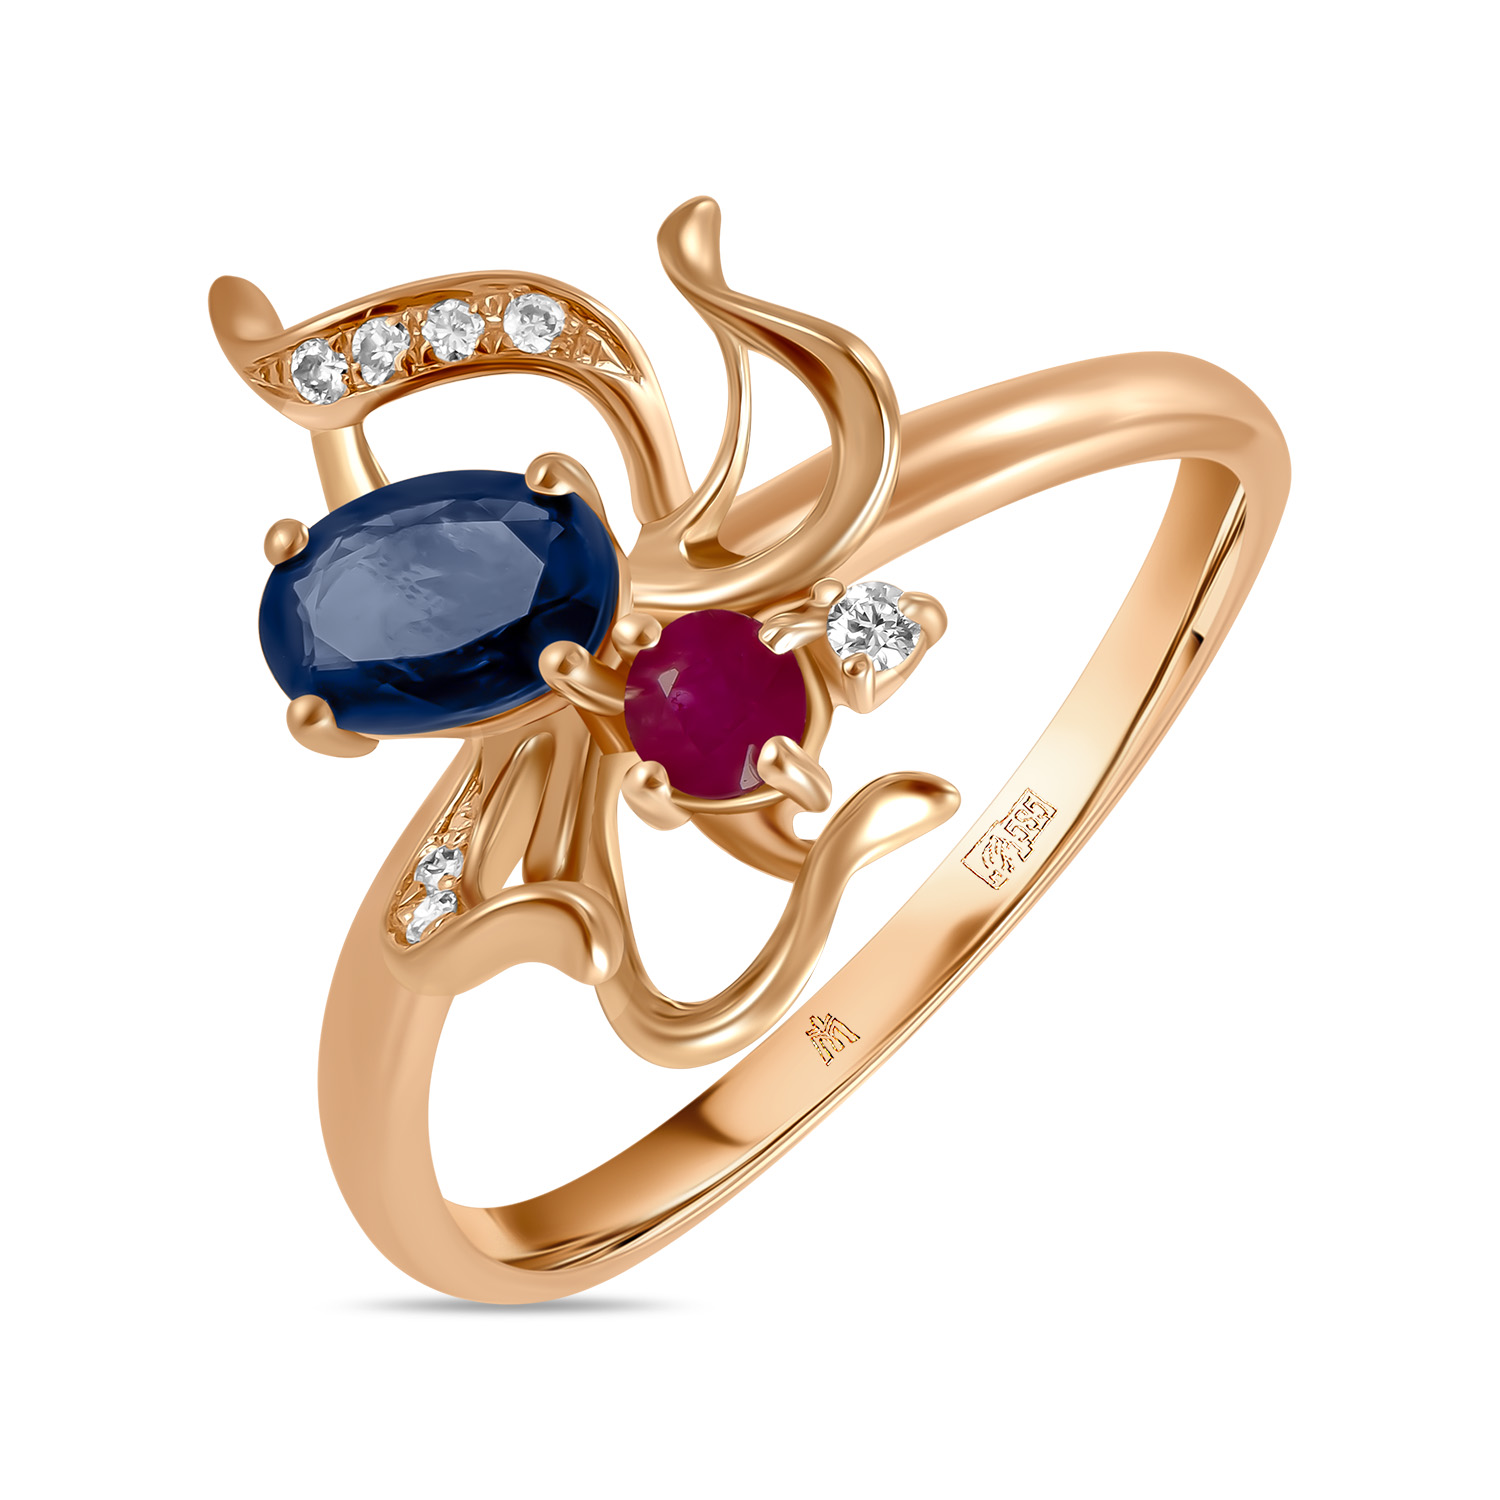 Кольца МЮЗ Золотое кольцо с бриллиантами, рубином и сапфиром золотое кольцо с бриллиантами перламутр рубином сапфиром